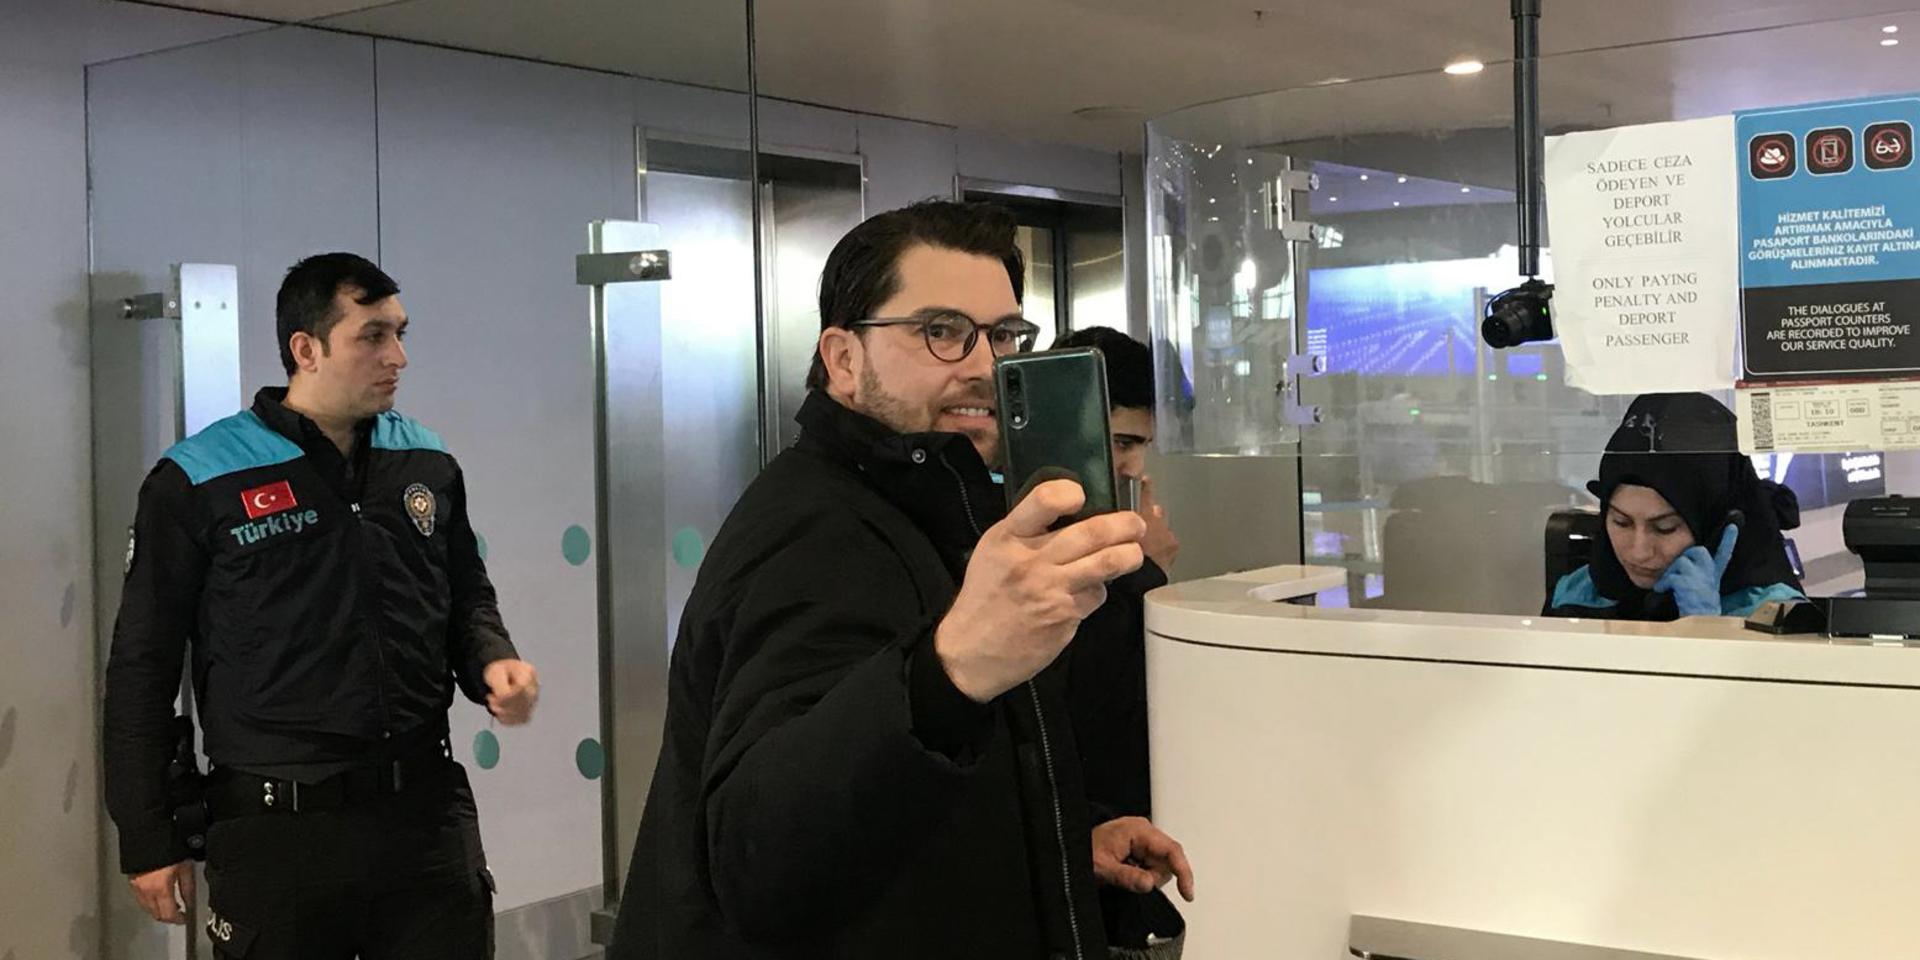 Sverigedemokraternas partiledare Jimmie Åkesson tar en selfie vid passkontrollen på Istanbuls flygplats, där han frågades ut av polisen under fredagen.